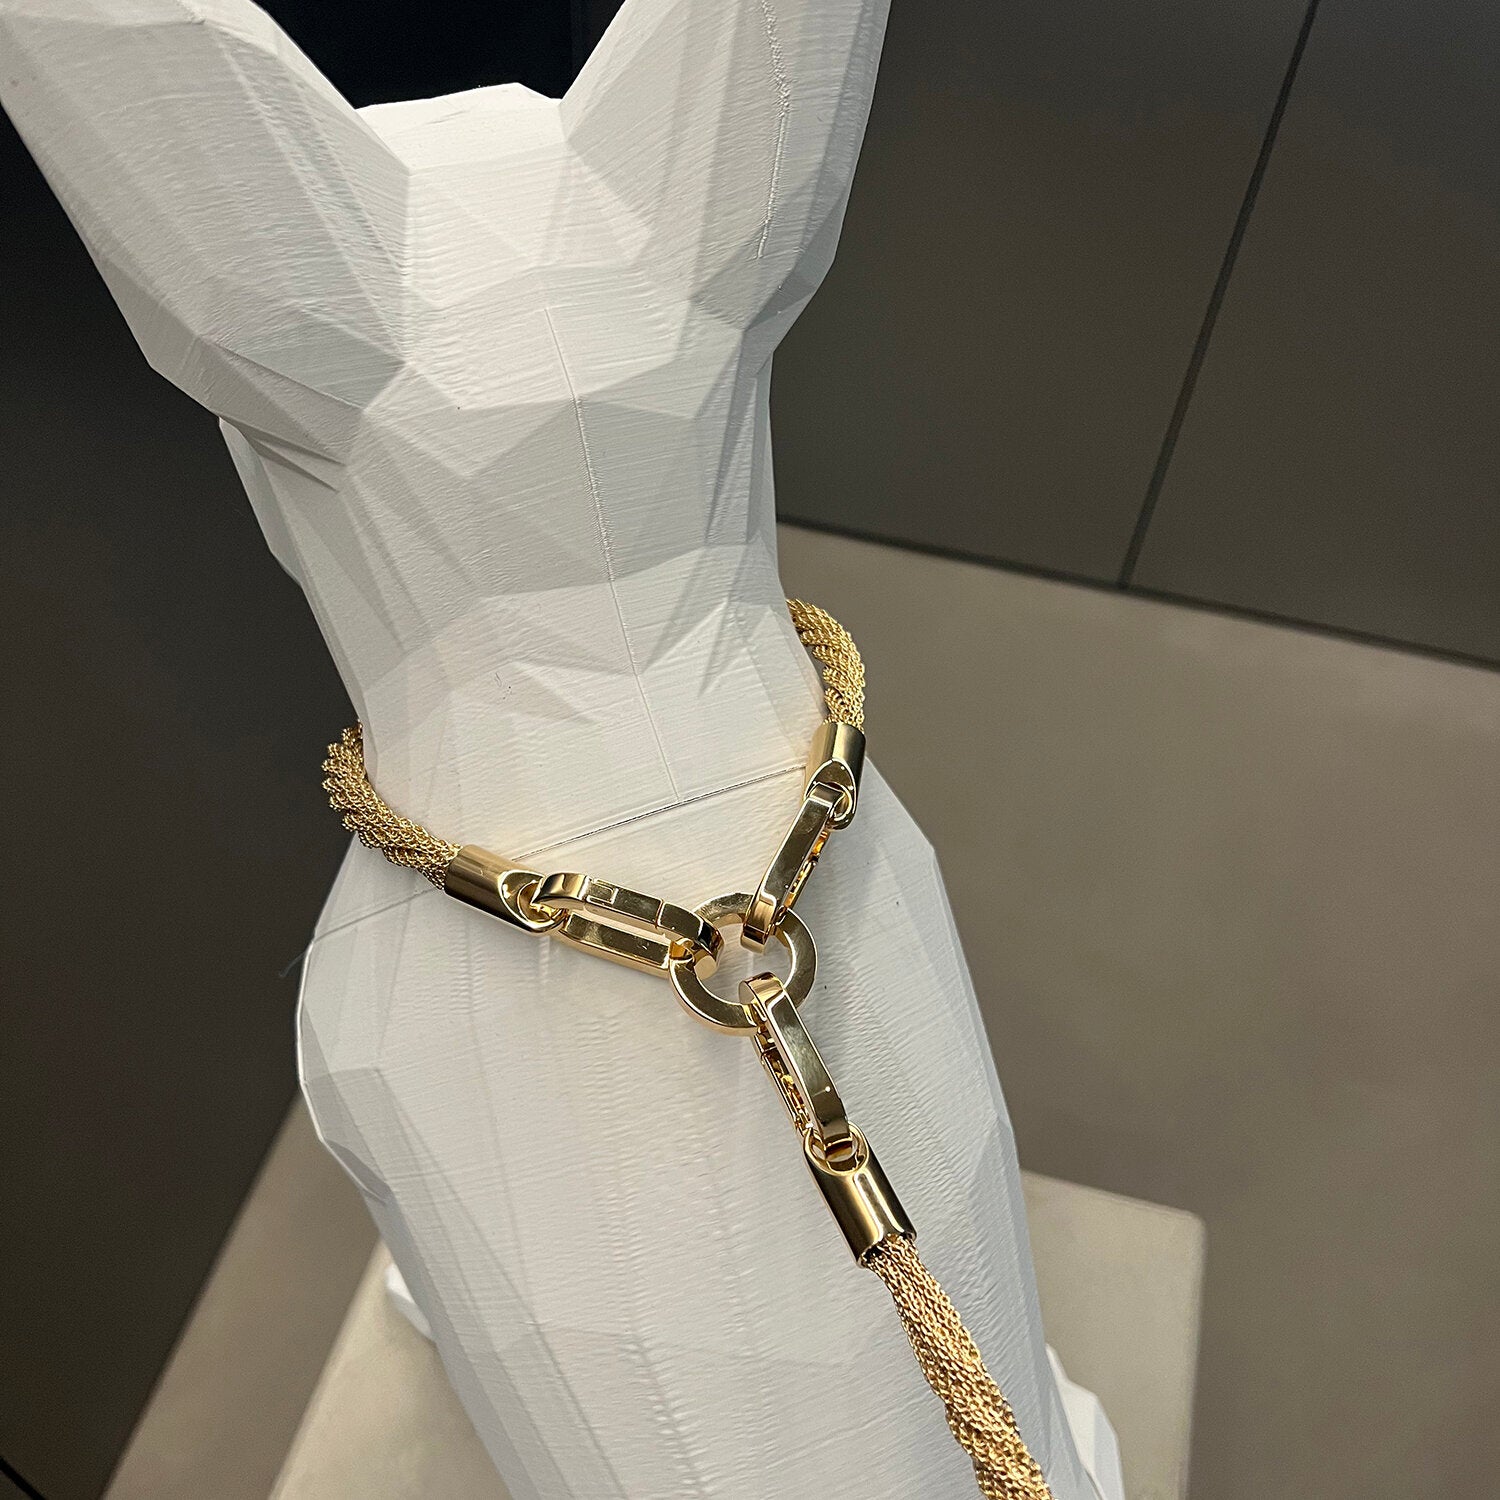 Luxury dog leash in Gold braided